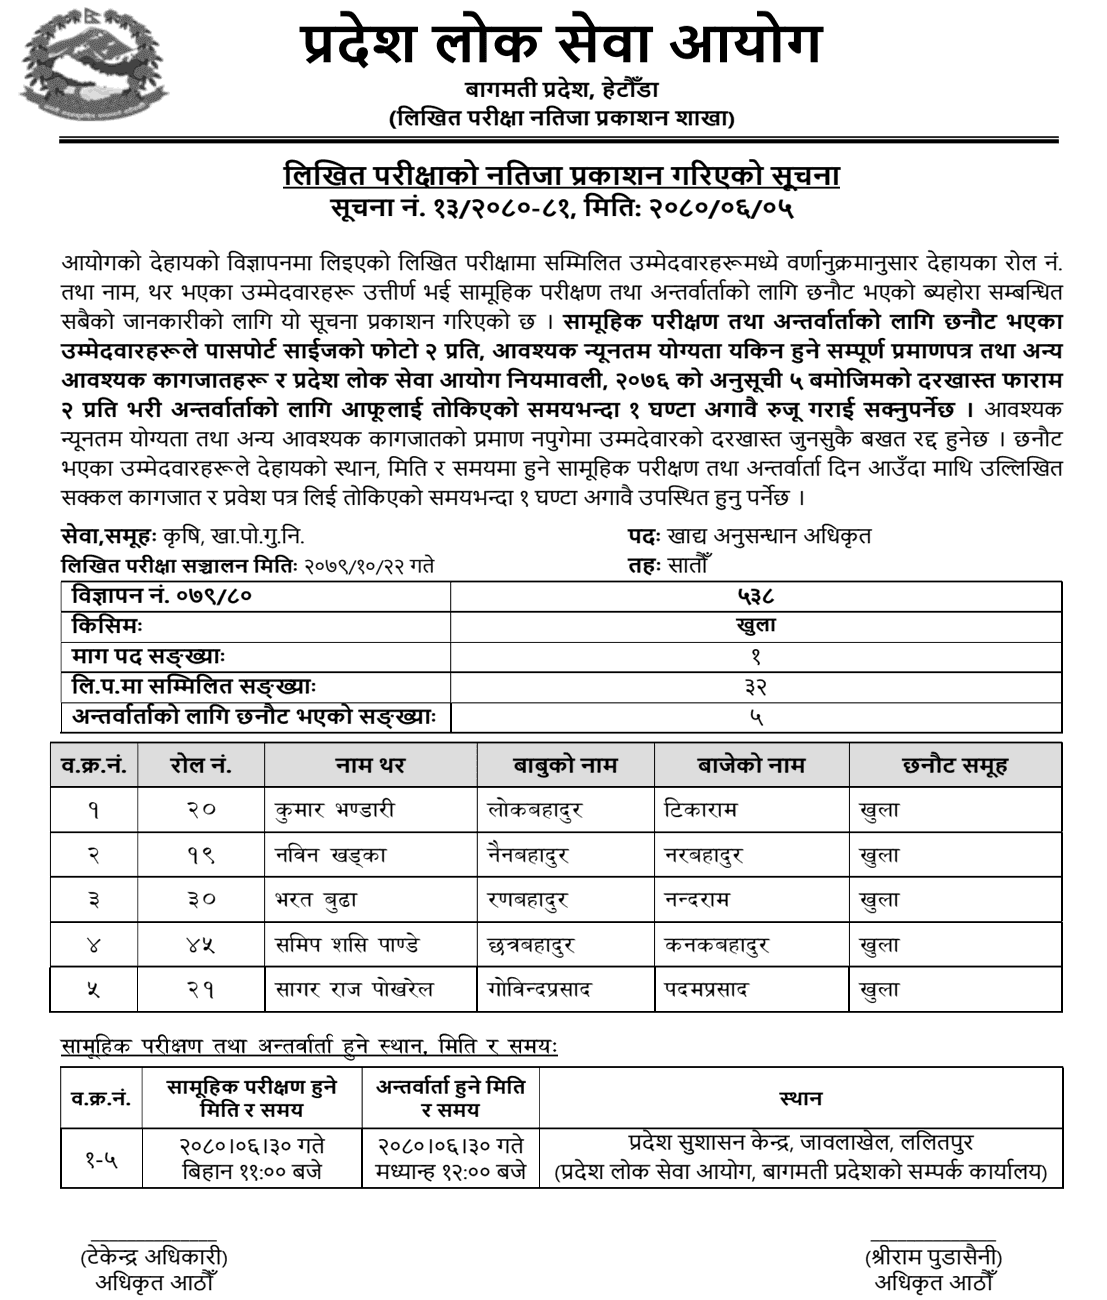 Bagmati Pradesh Lok Sewa Aayog Written Exam Result of Food Research Officer 2080